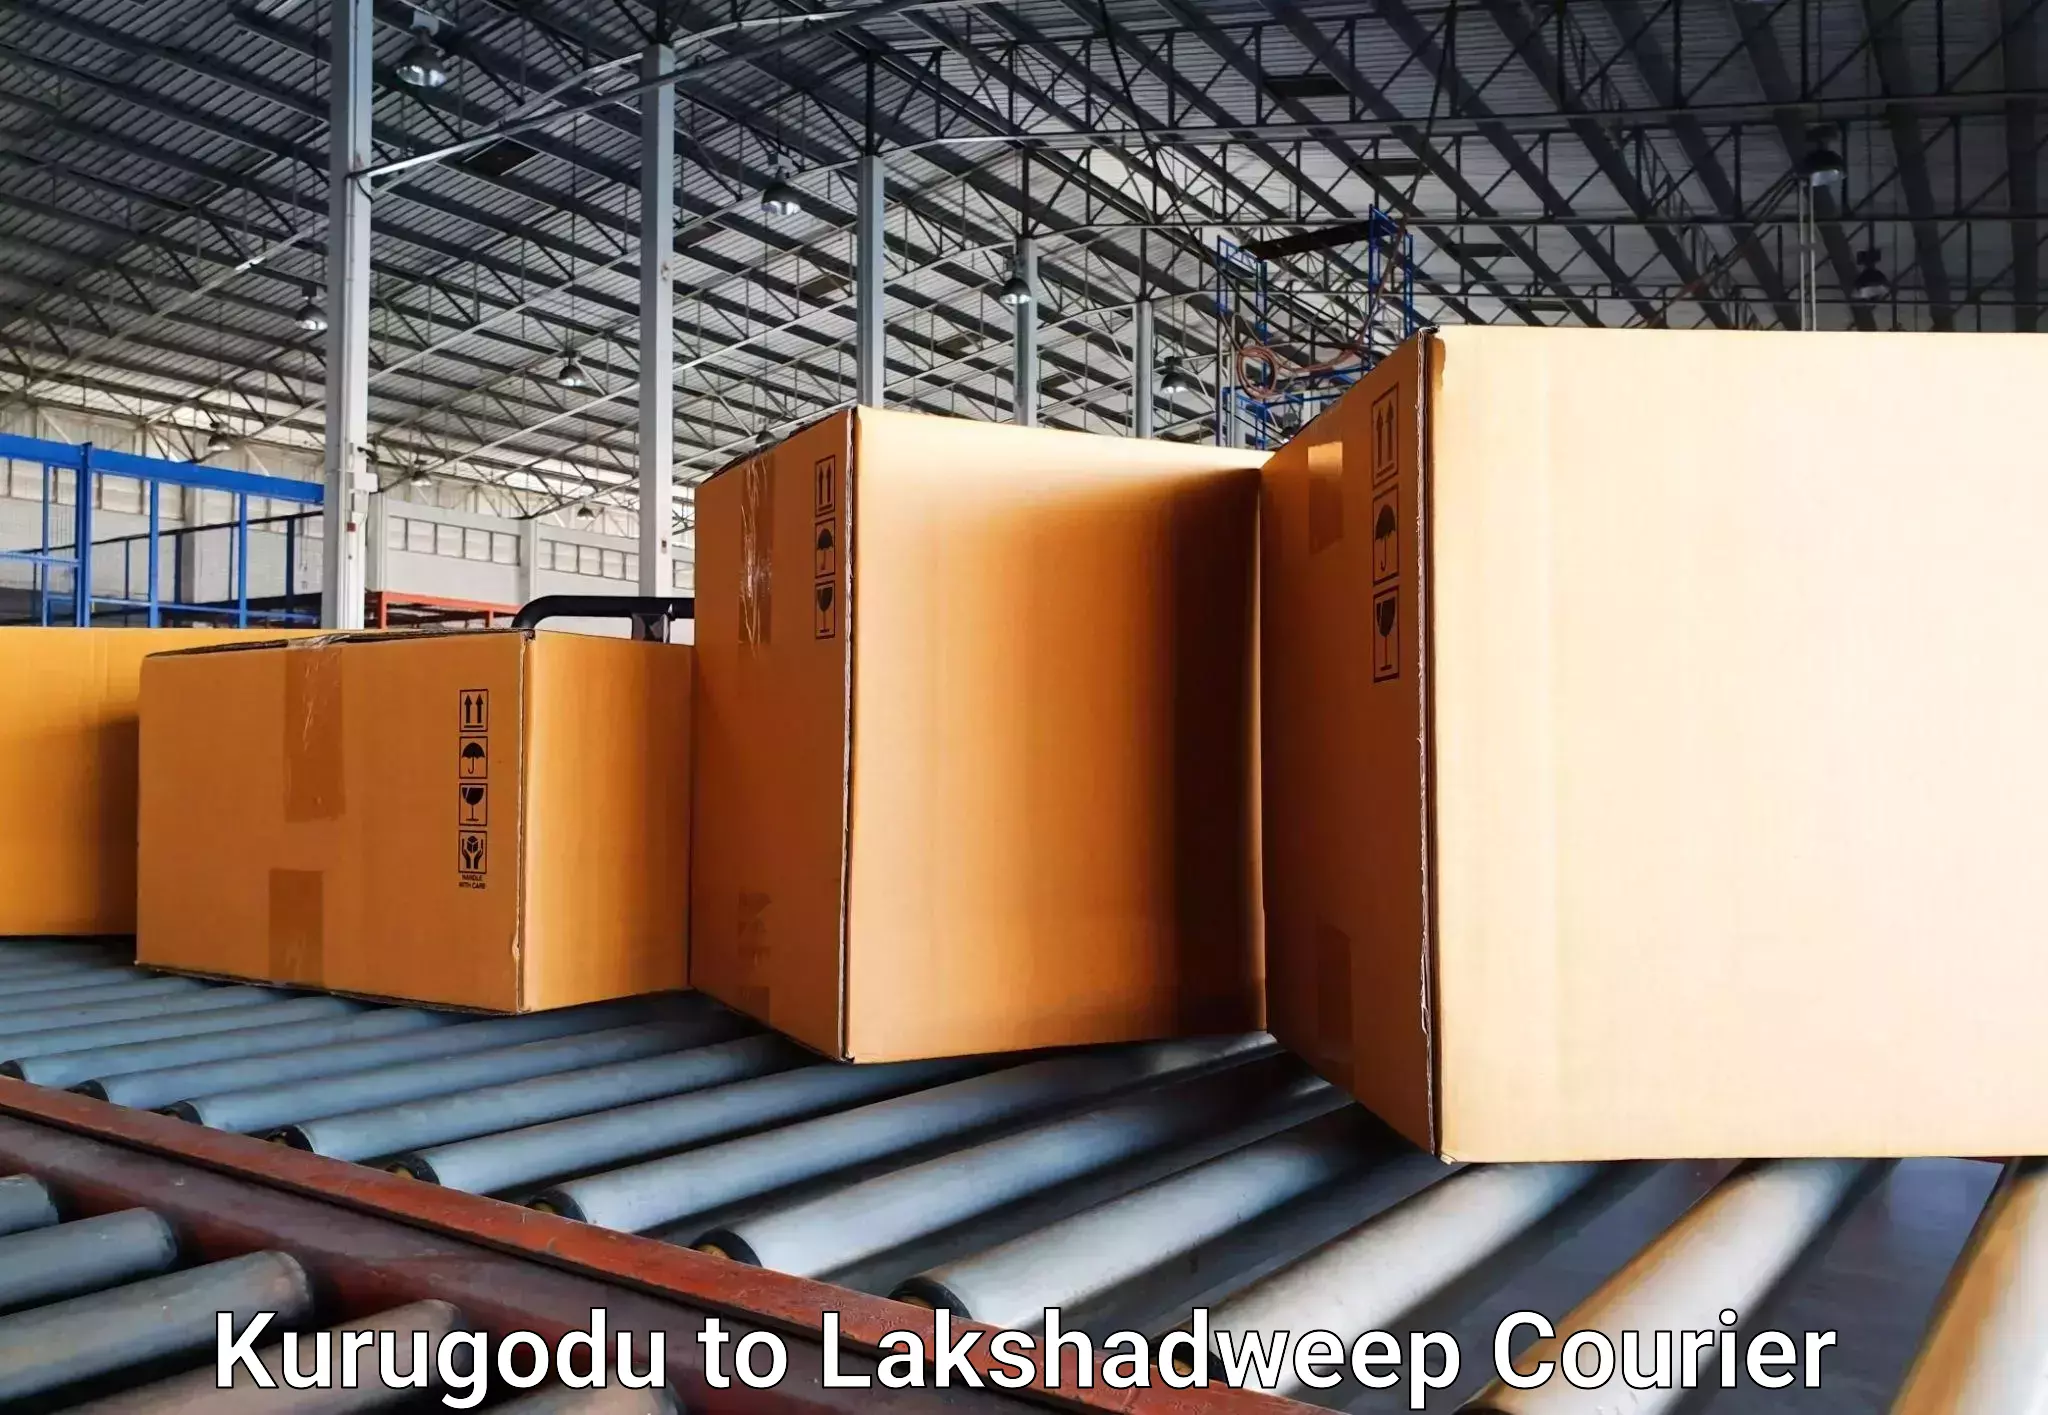 Reliable baggage delivery in Kurugodu to Lakshadweep